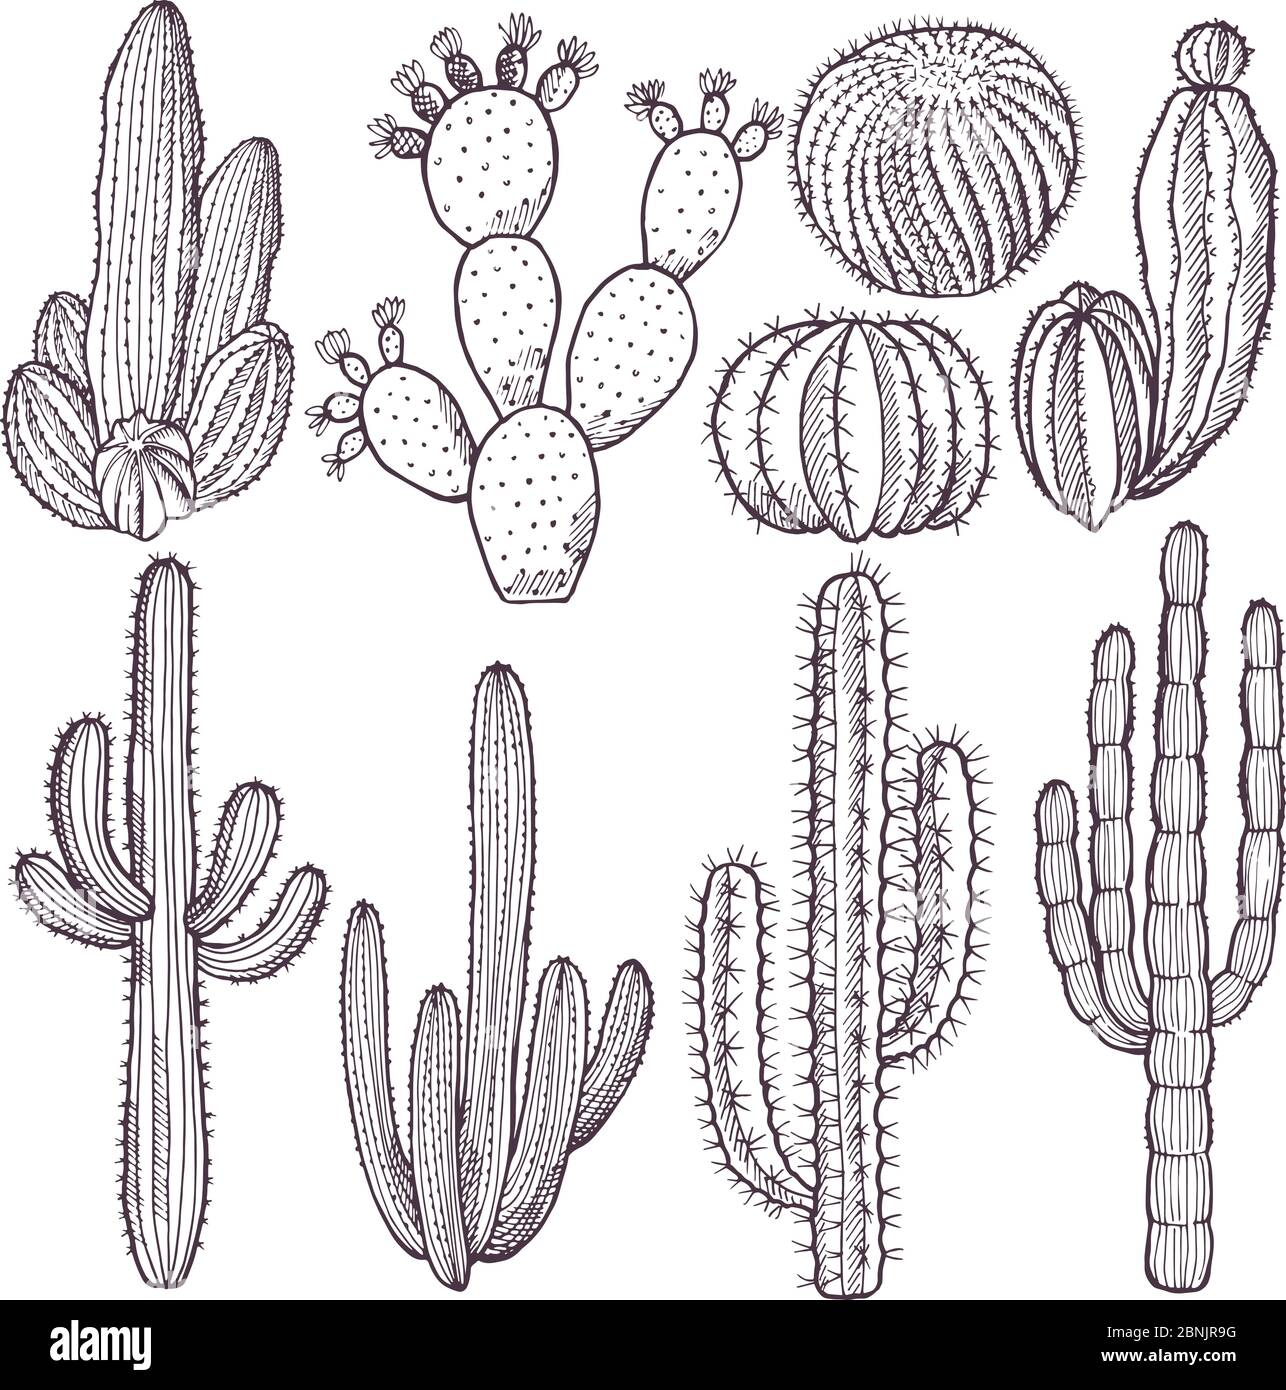 Illustrations de cactus sauvages. Images vectorielles dessinées à la main Illustration de Vecteur